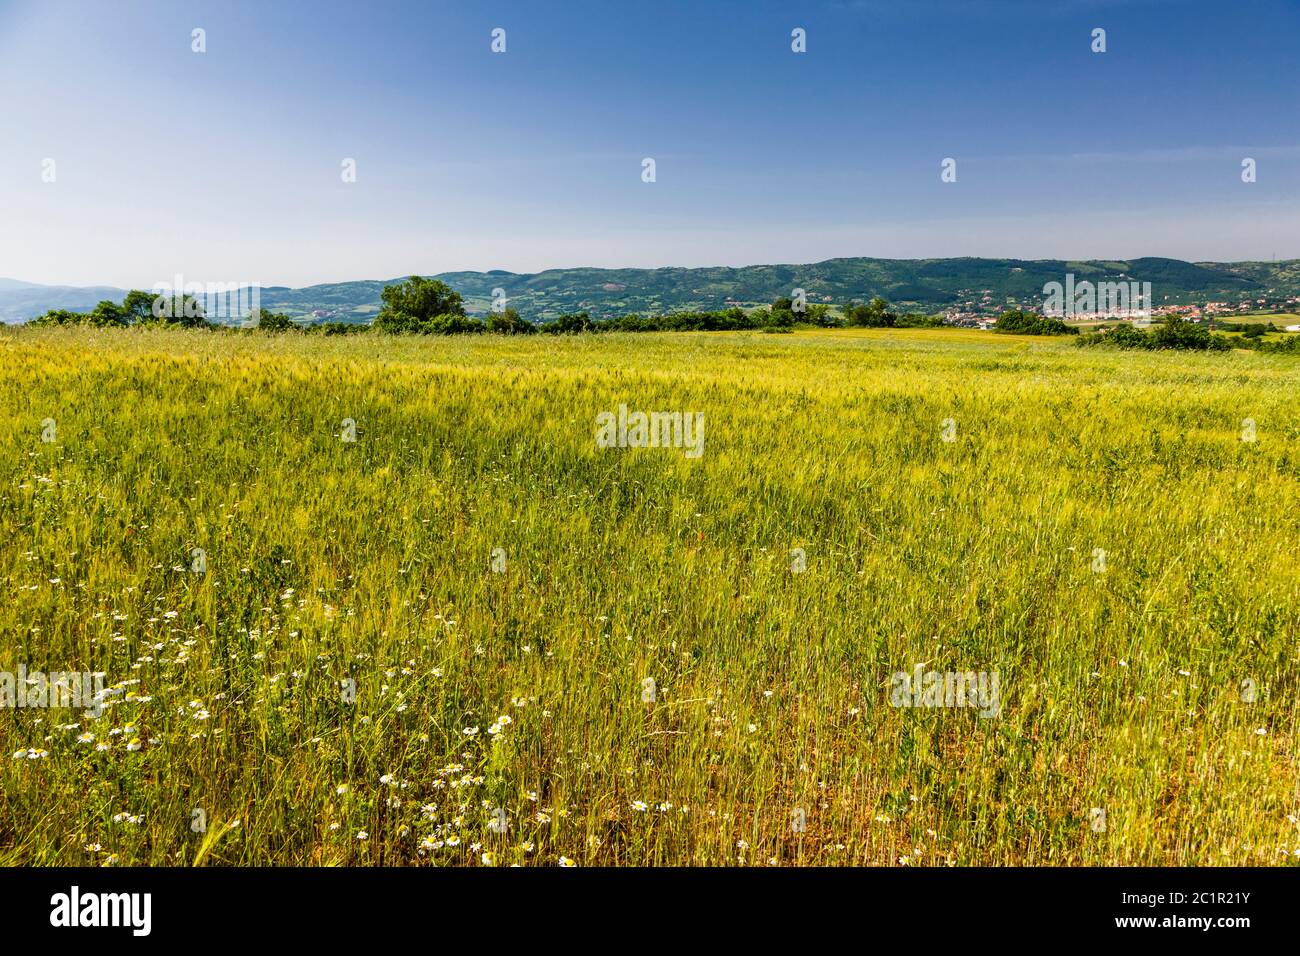 Paisaje de la región de Macedonia, campos de trigo de la región de Macedonia, suburbio de Serres,Macedonia central,Grecia,Europa Foto de stock